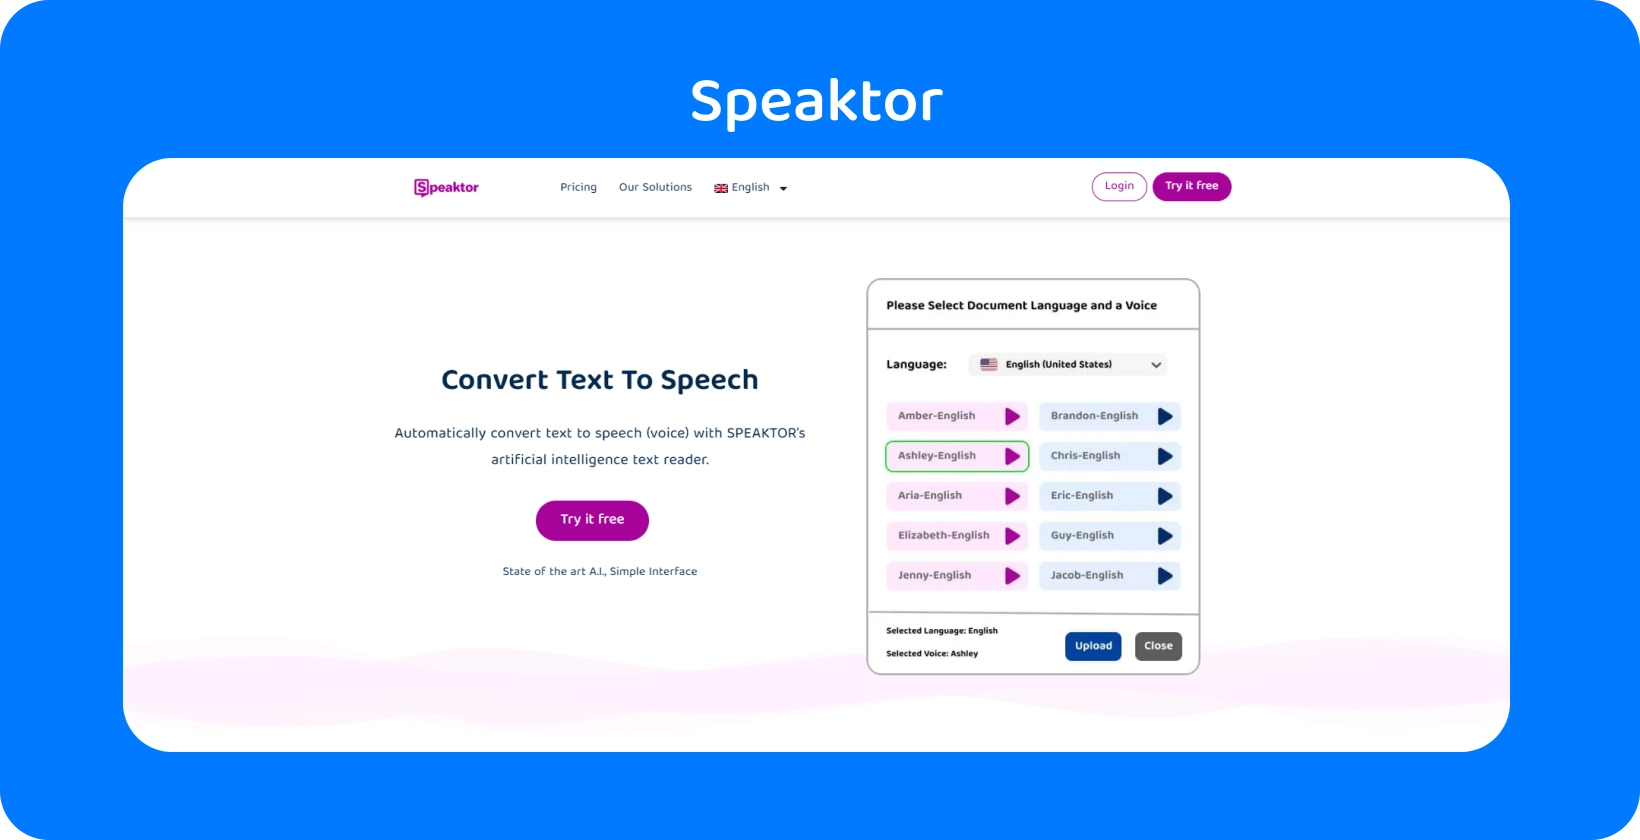 Speaktor ofrece una interfaz fácil de usar para la conversión de texto a voz.